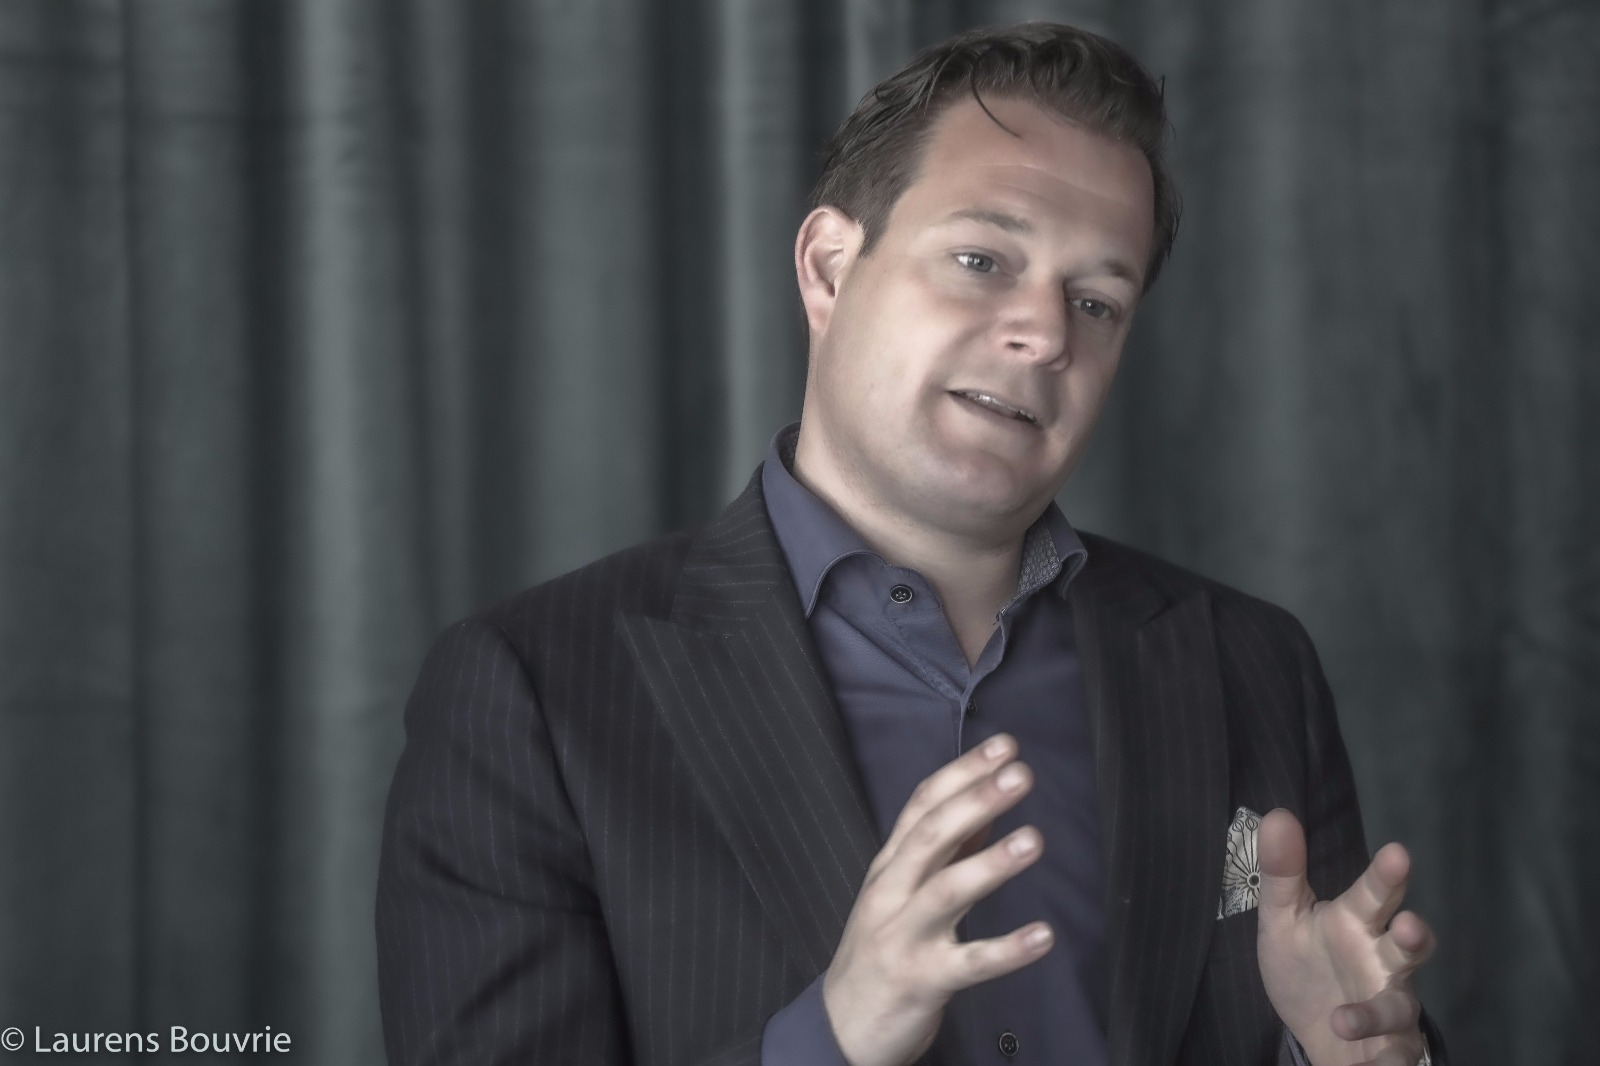 Vijf vragen aan Rino Soeters - Delfin impact executives - Max Ruiters